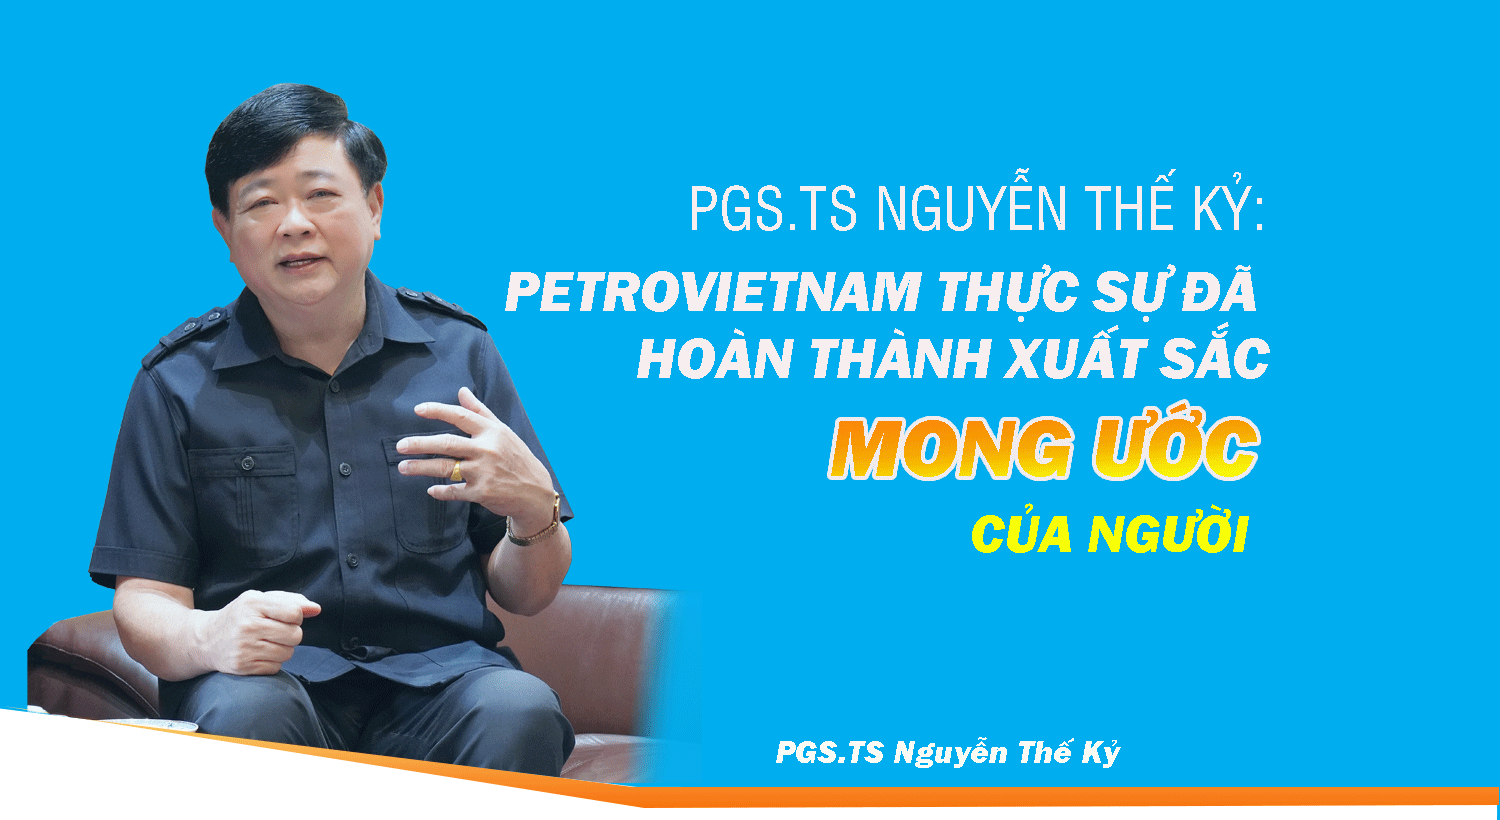 PGS.TS Nguyễn Thế Kỷ: Petrovietnam thực sự đã hoàn thành xuất sắc mong ước của Người